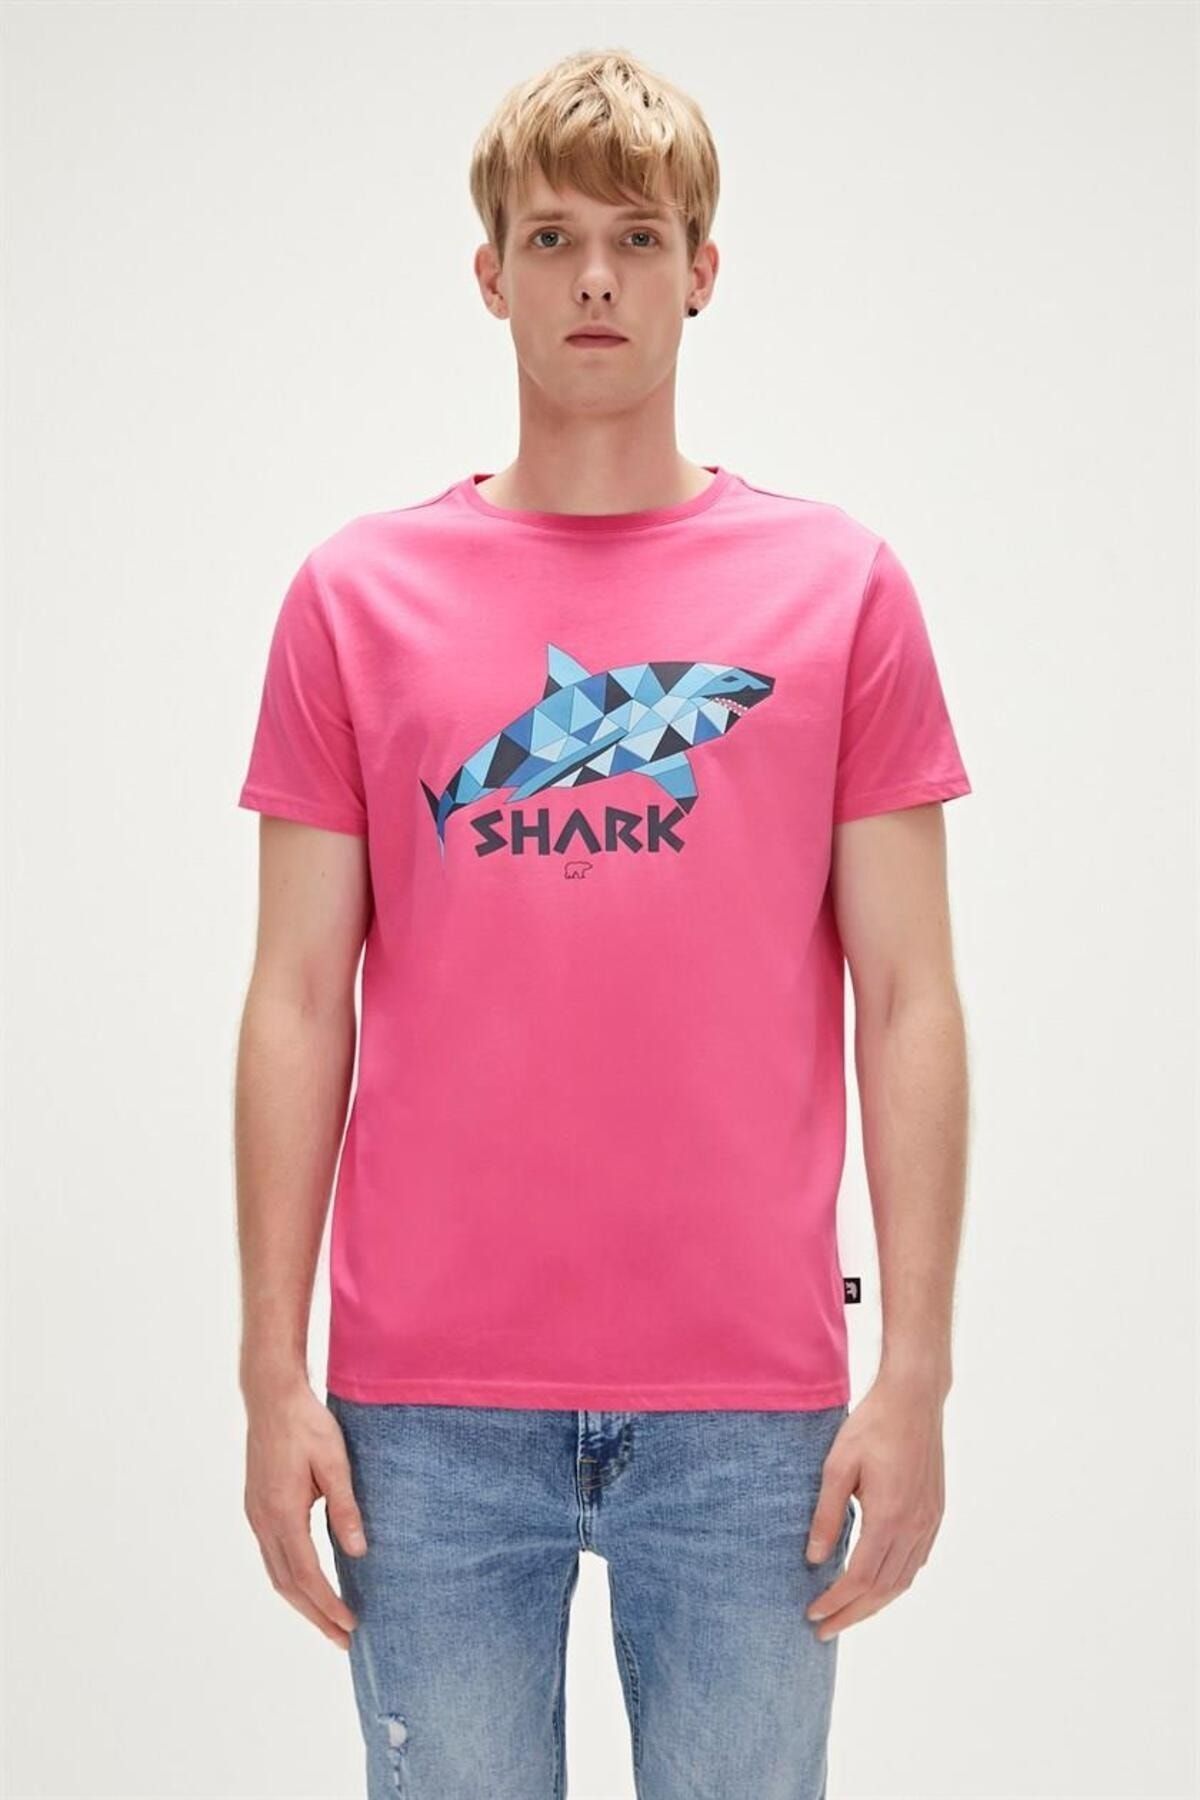 Bad Bear 23.01.07.024-C124 Shark Erkek T-Shirt